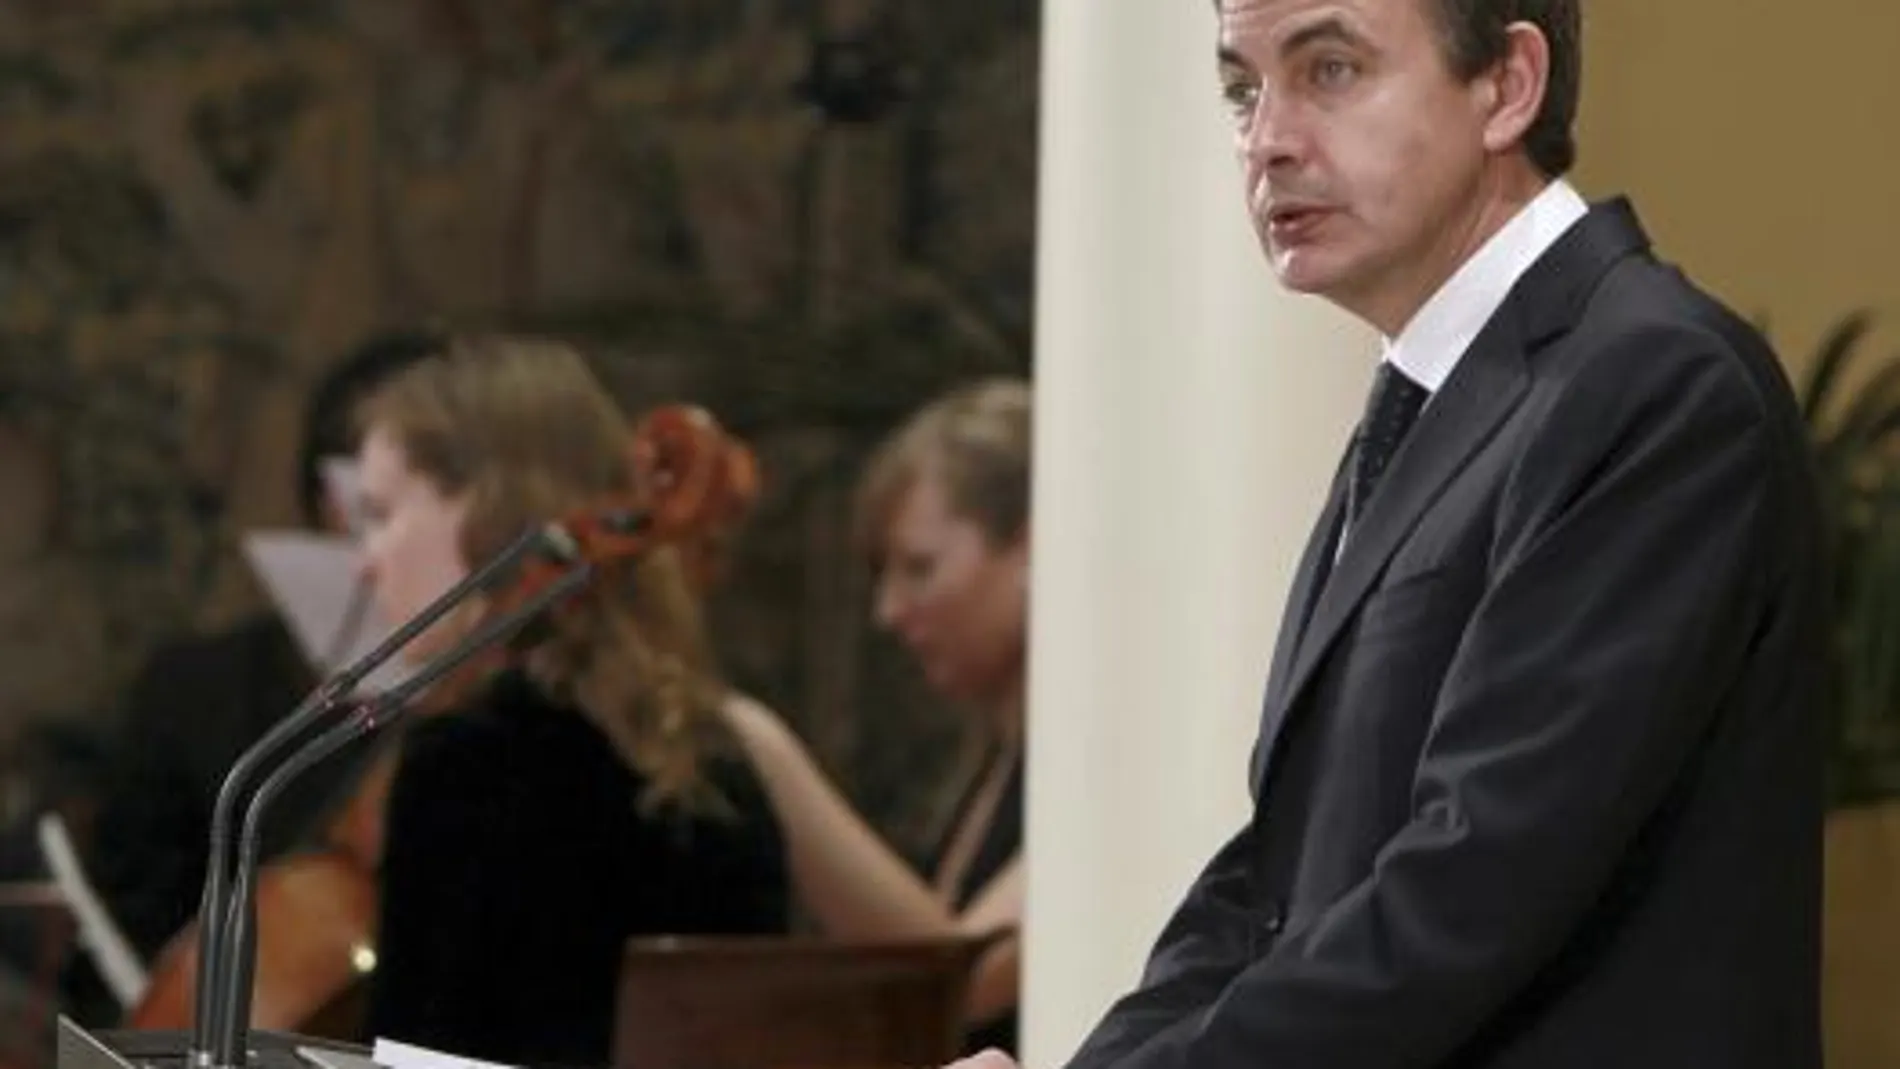 Zapatero: «Si las autonomías no cumplen sus obligaciones, actuará el Gobierno»